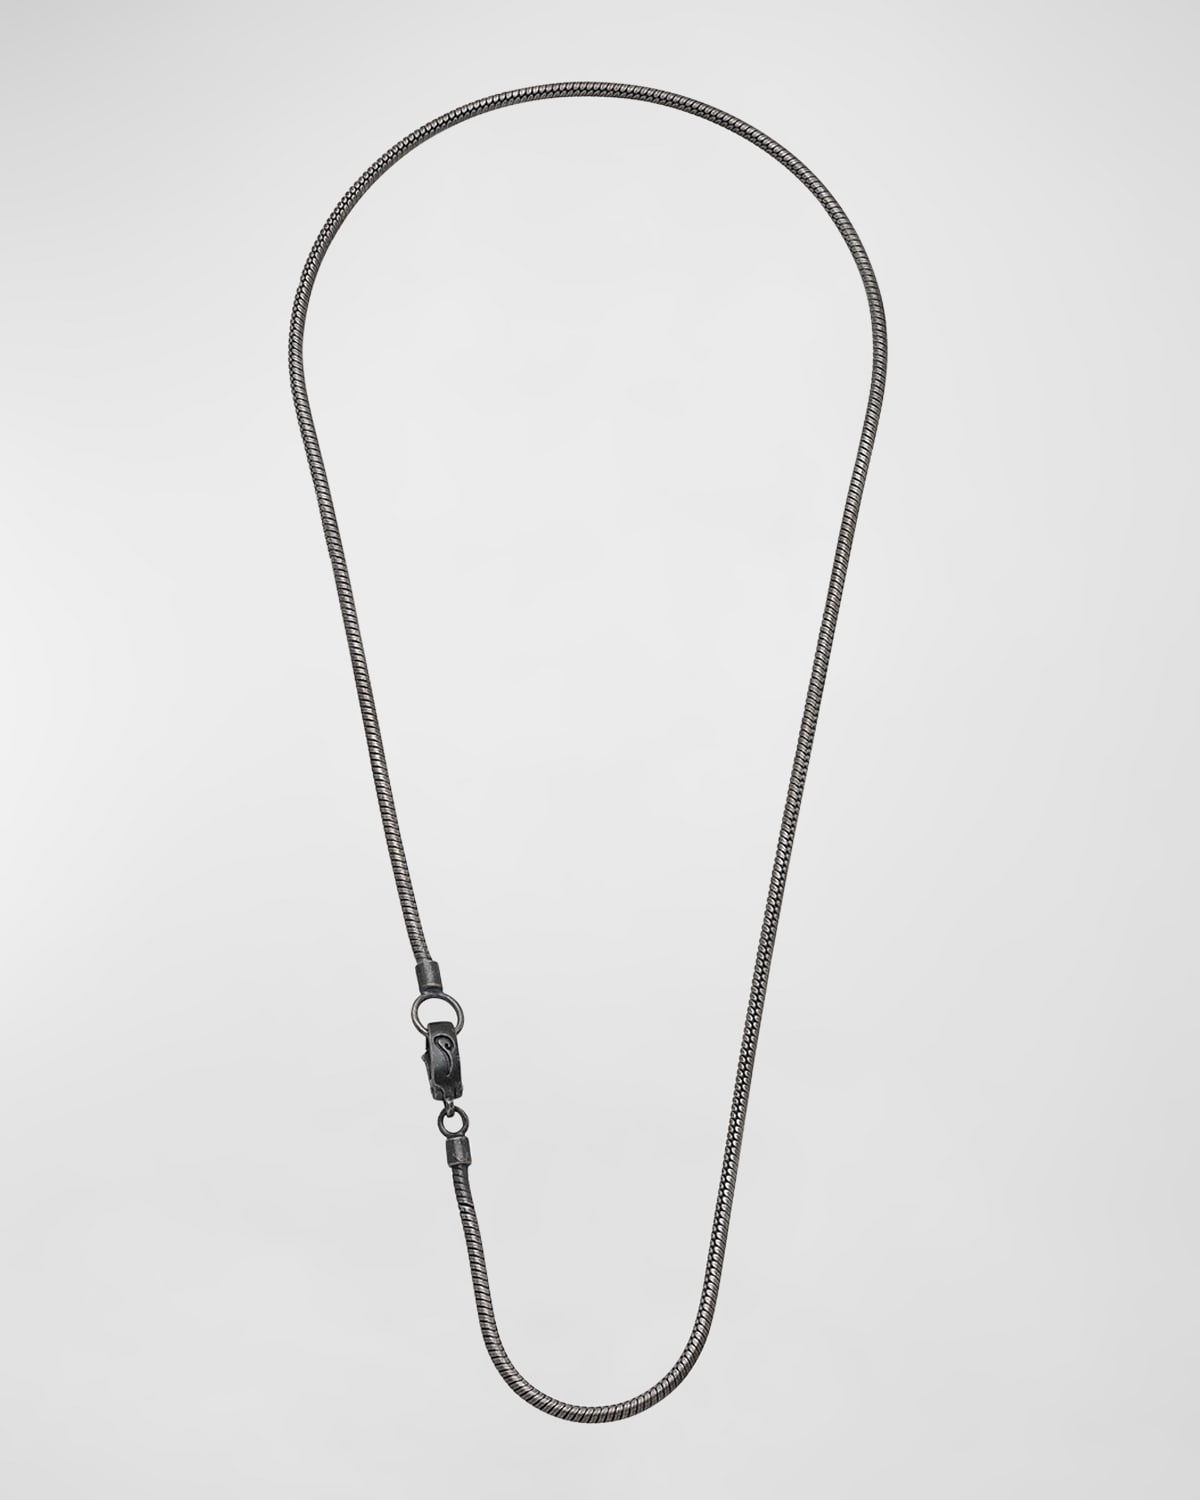 Shop Marco Dal Maso Men's Classy Oxidized Silver Necklace, 24"l